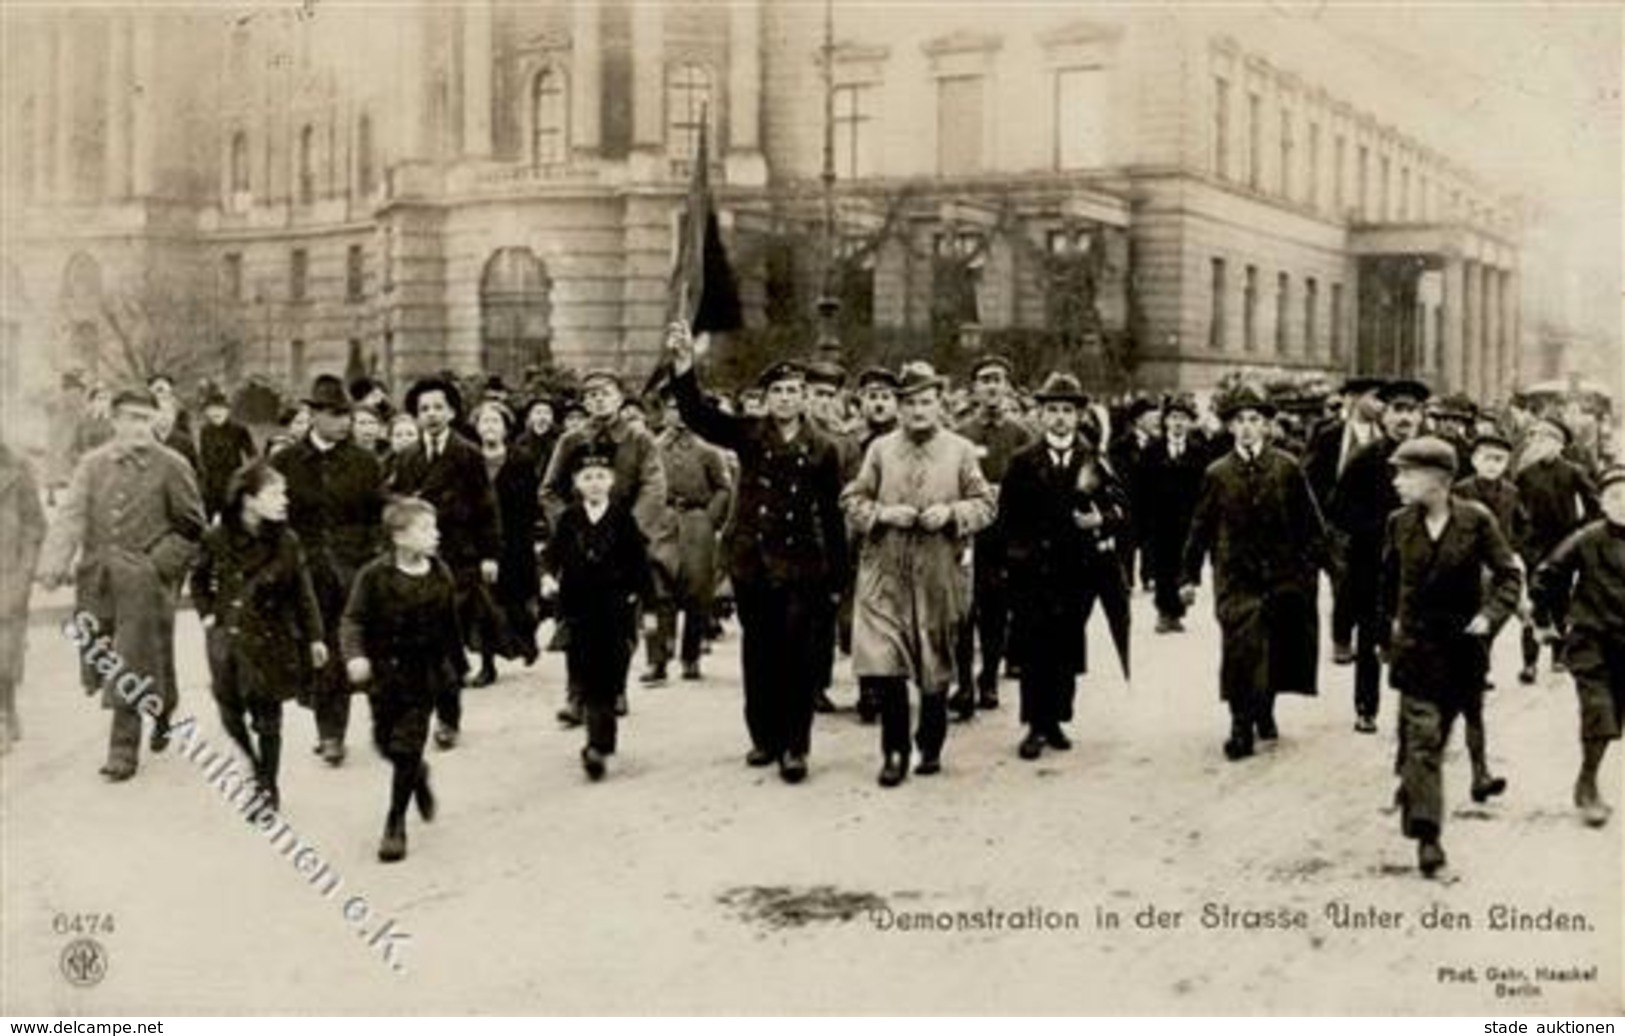 REVOLUTION BERLIN 1919 - Demonstration In Der Strasse Unter Den Linden NPG 6474 I - Guerre